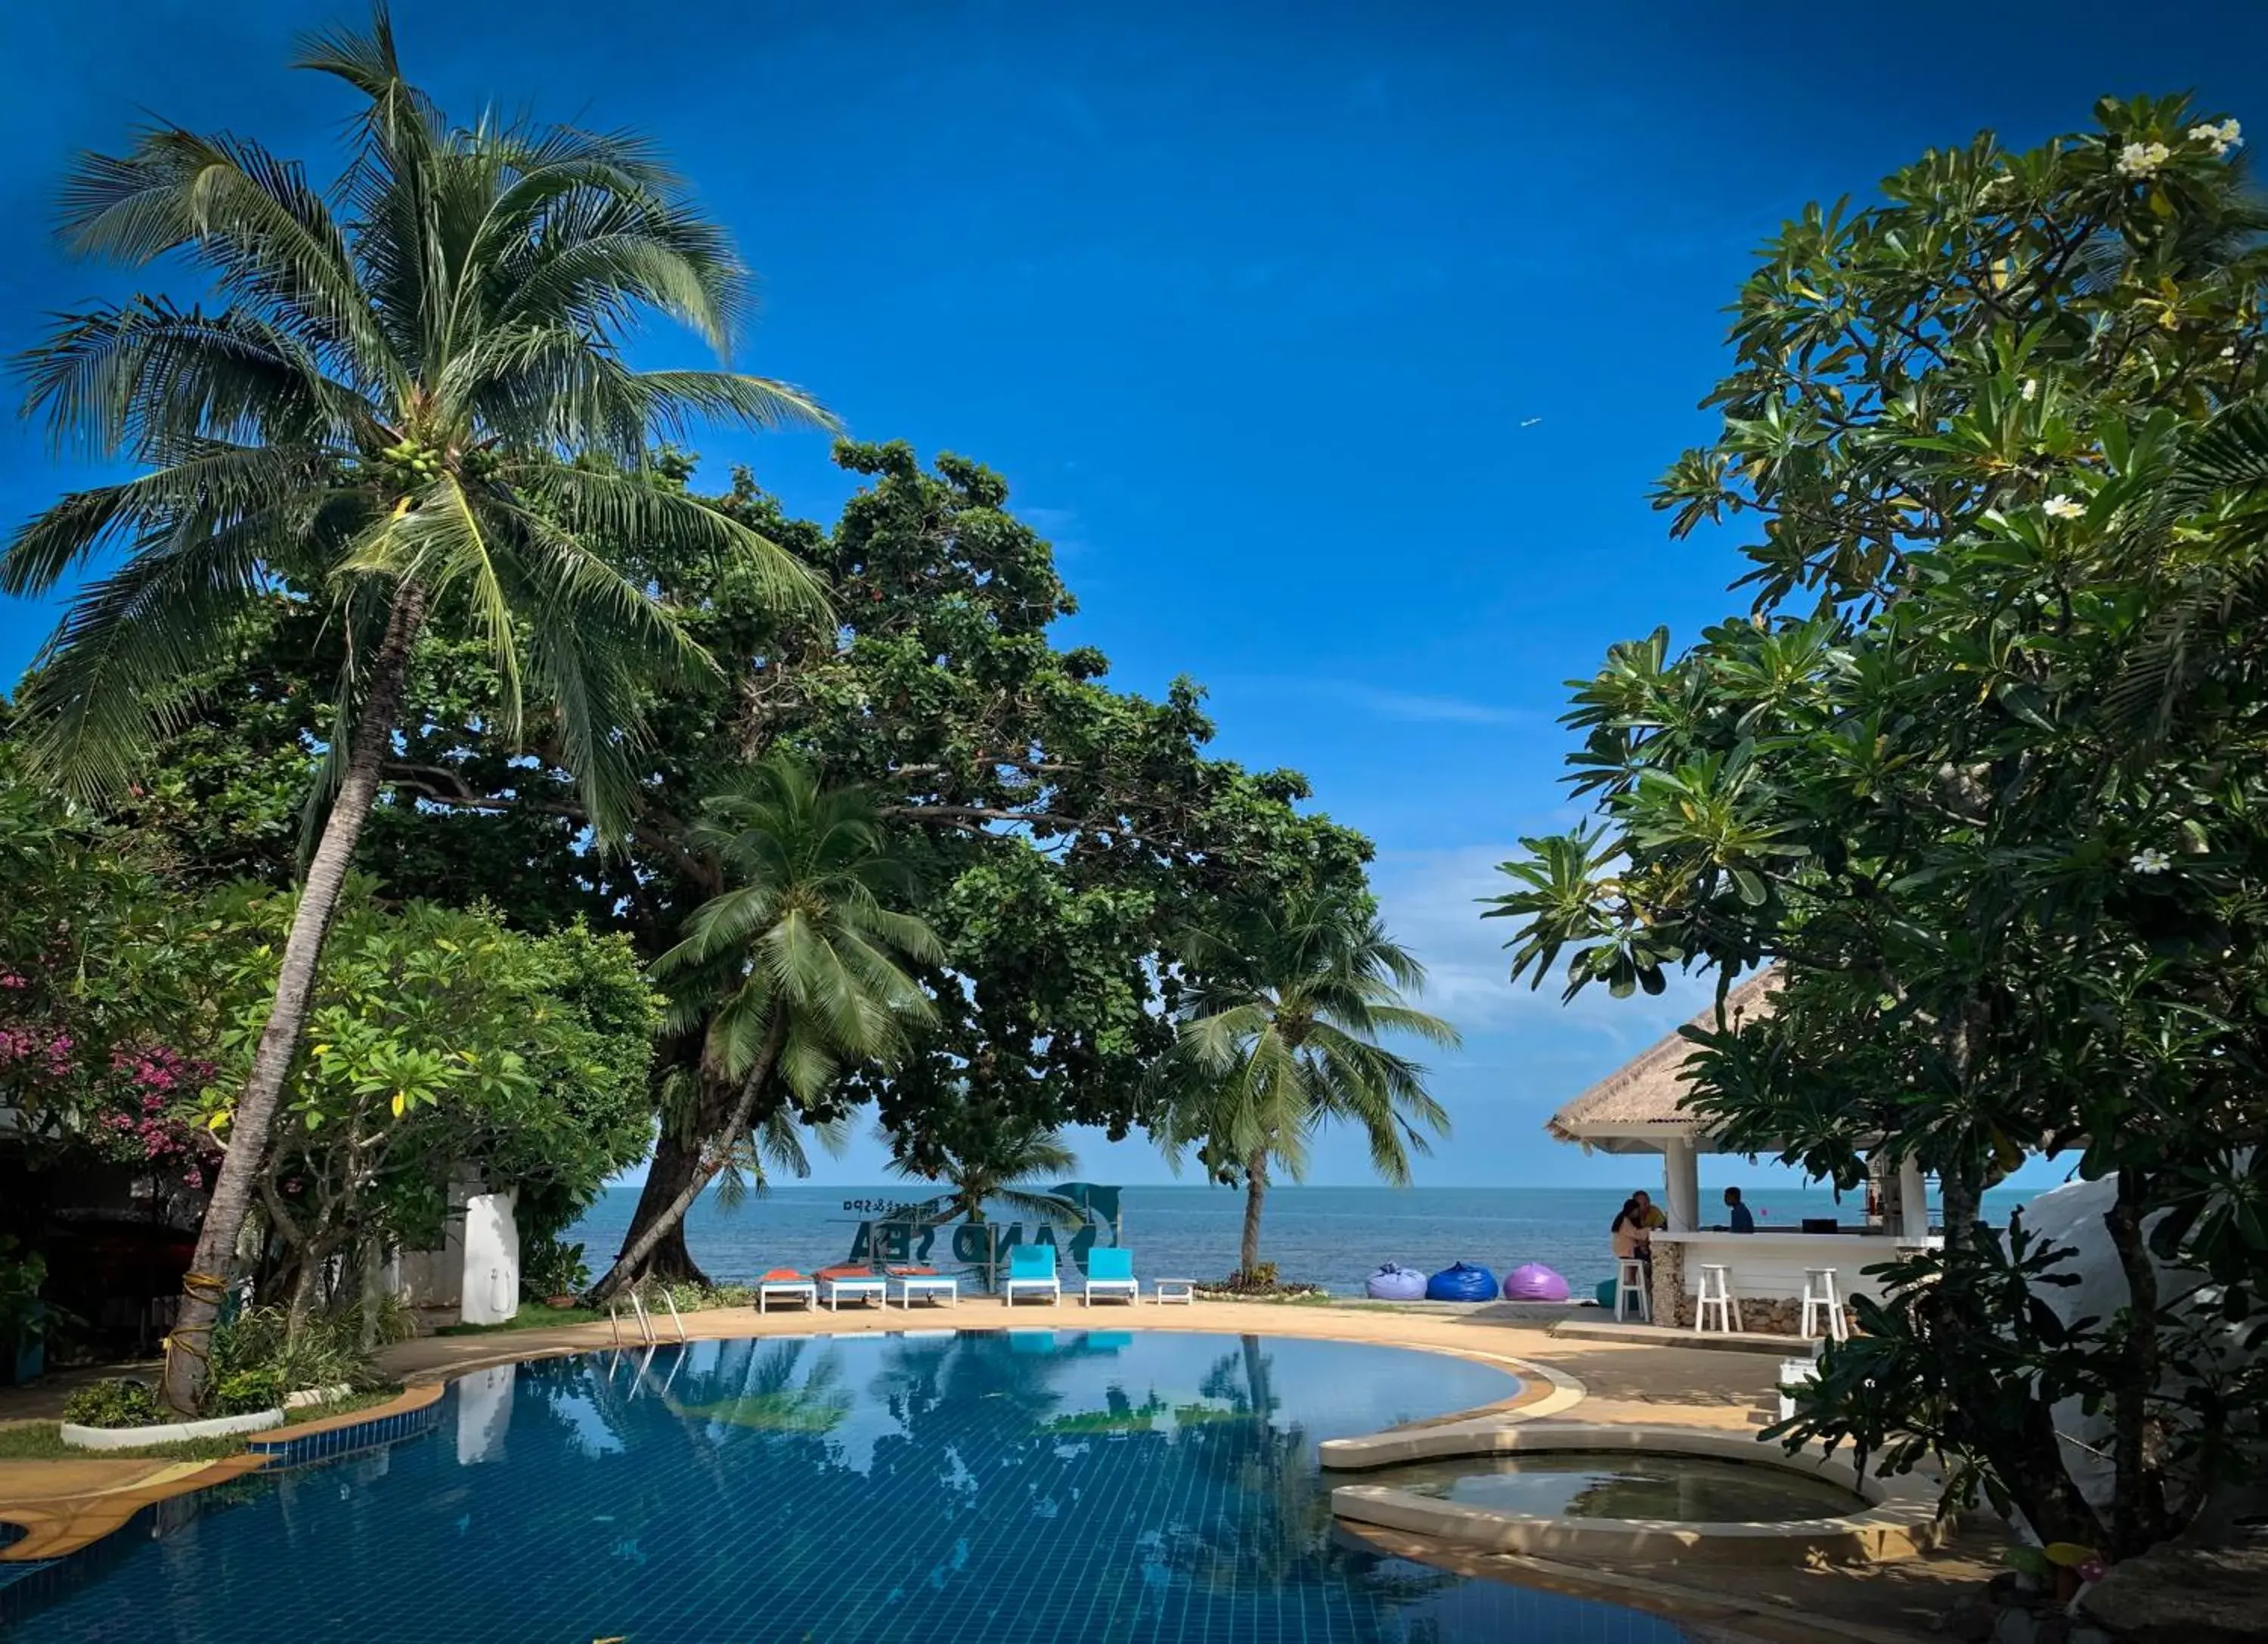 Pool view, Swimming Pool in Sand Sea Resort & Spa - Lamai Beach , Koh Samui